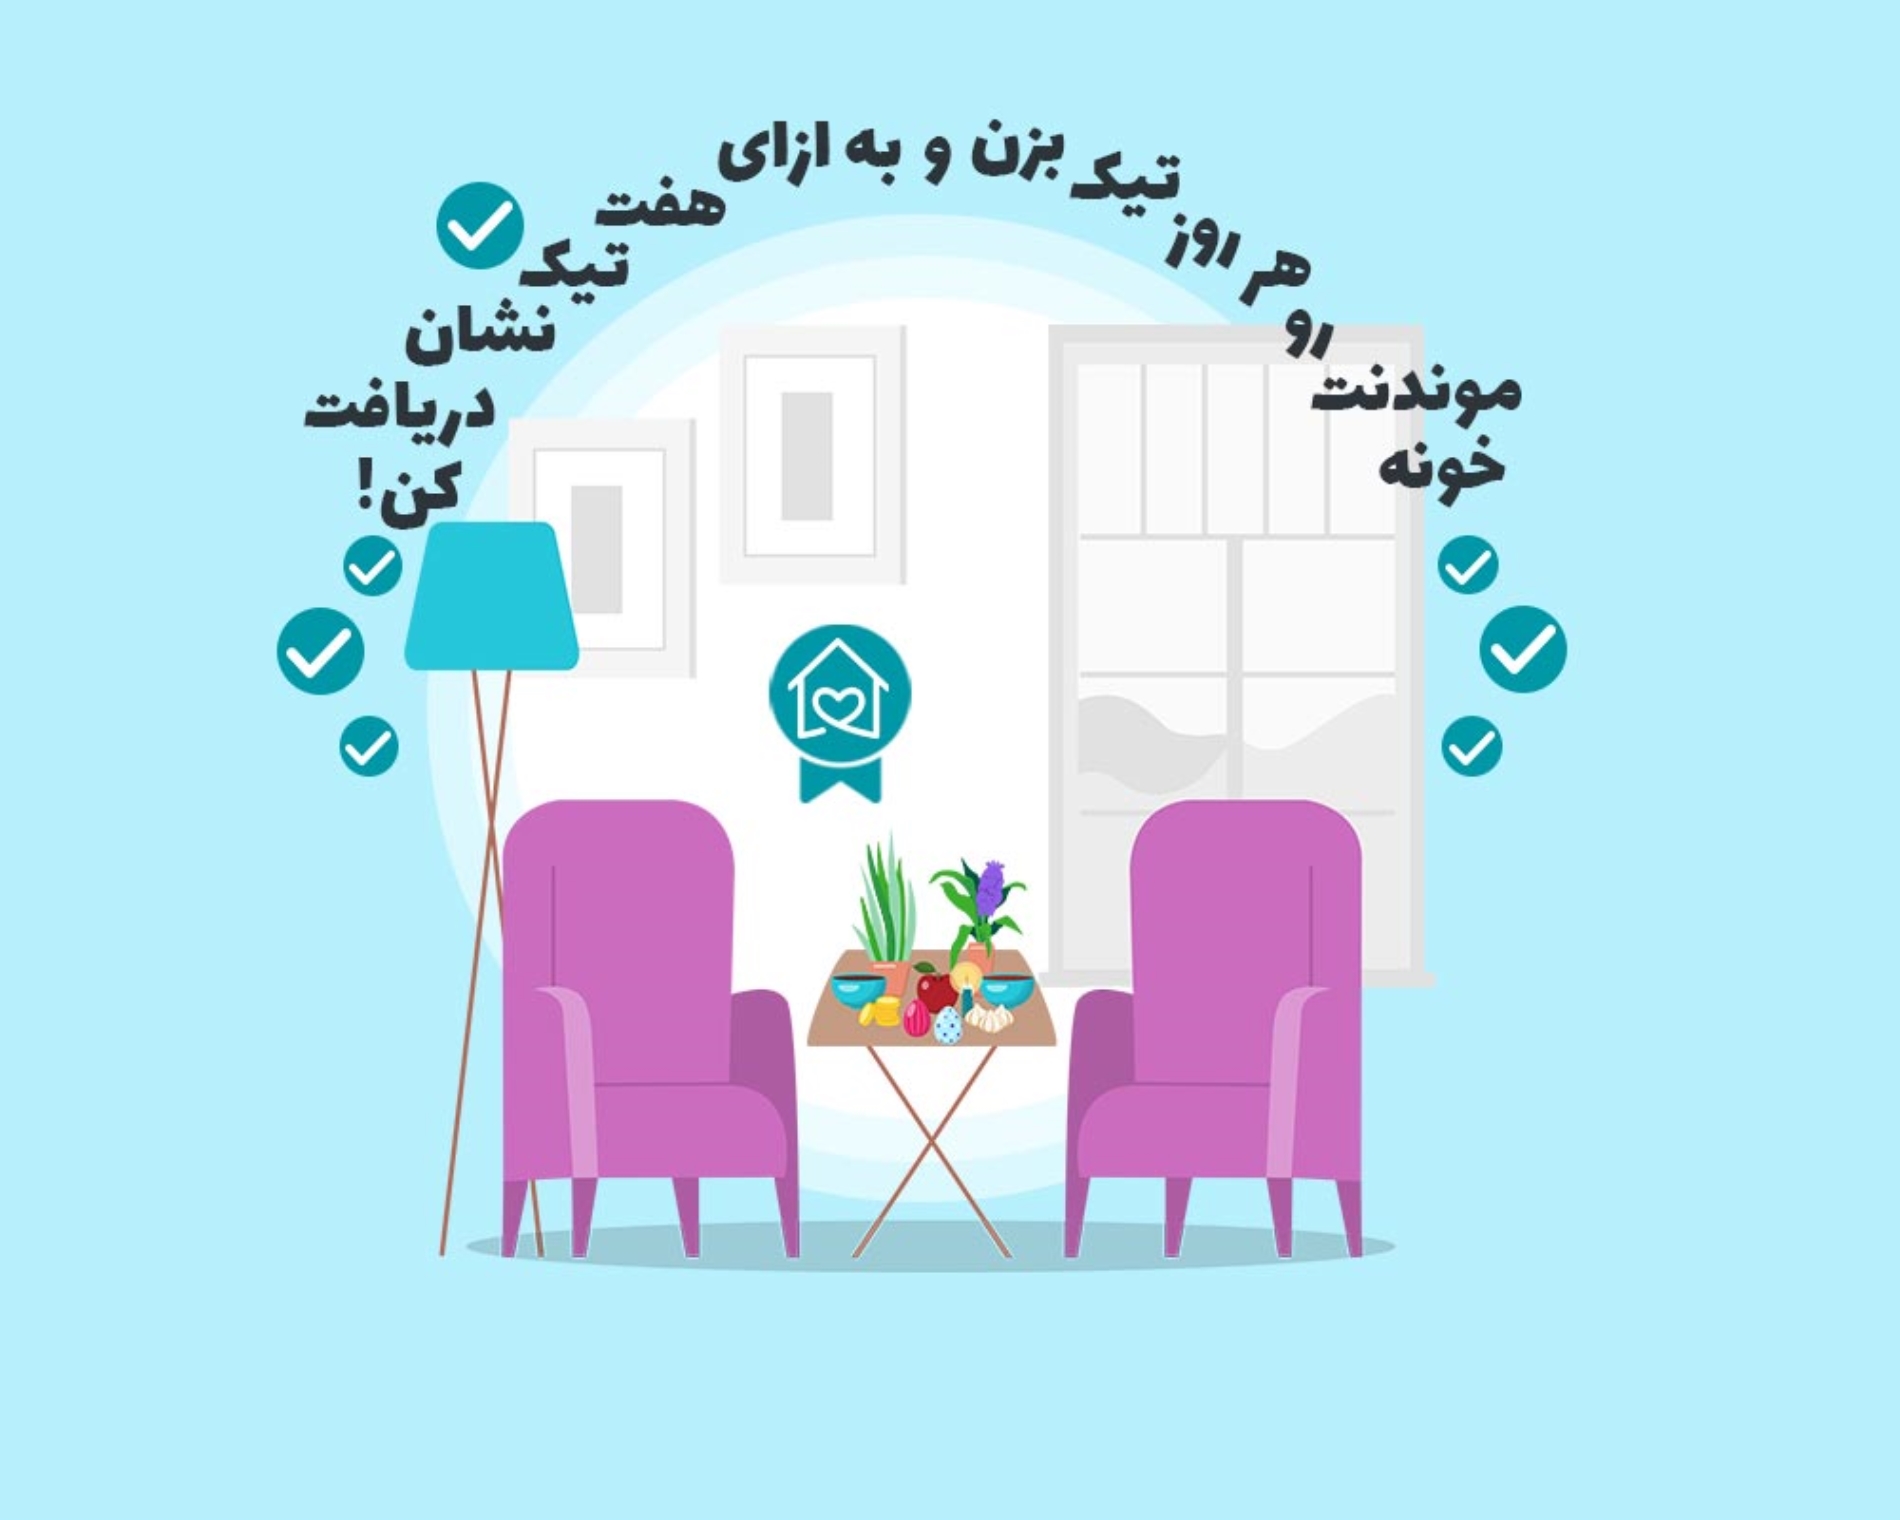 #خونه_میمونم